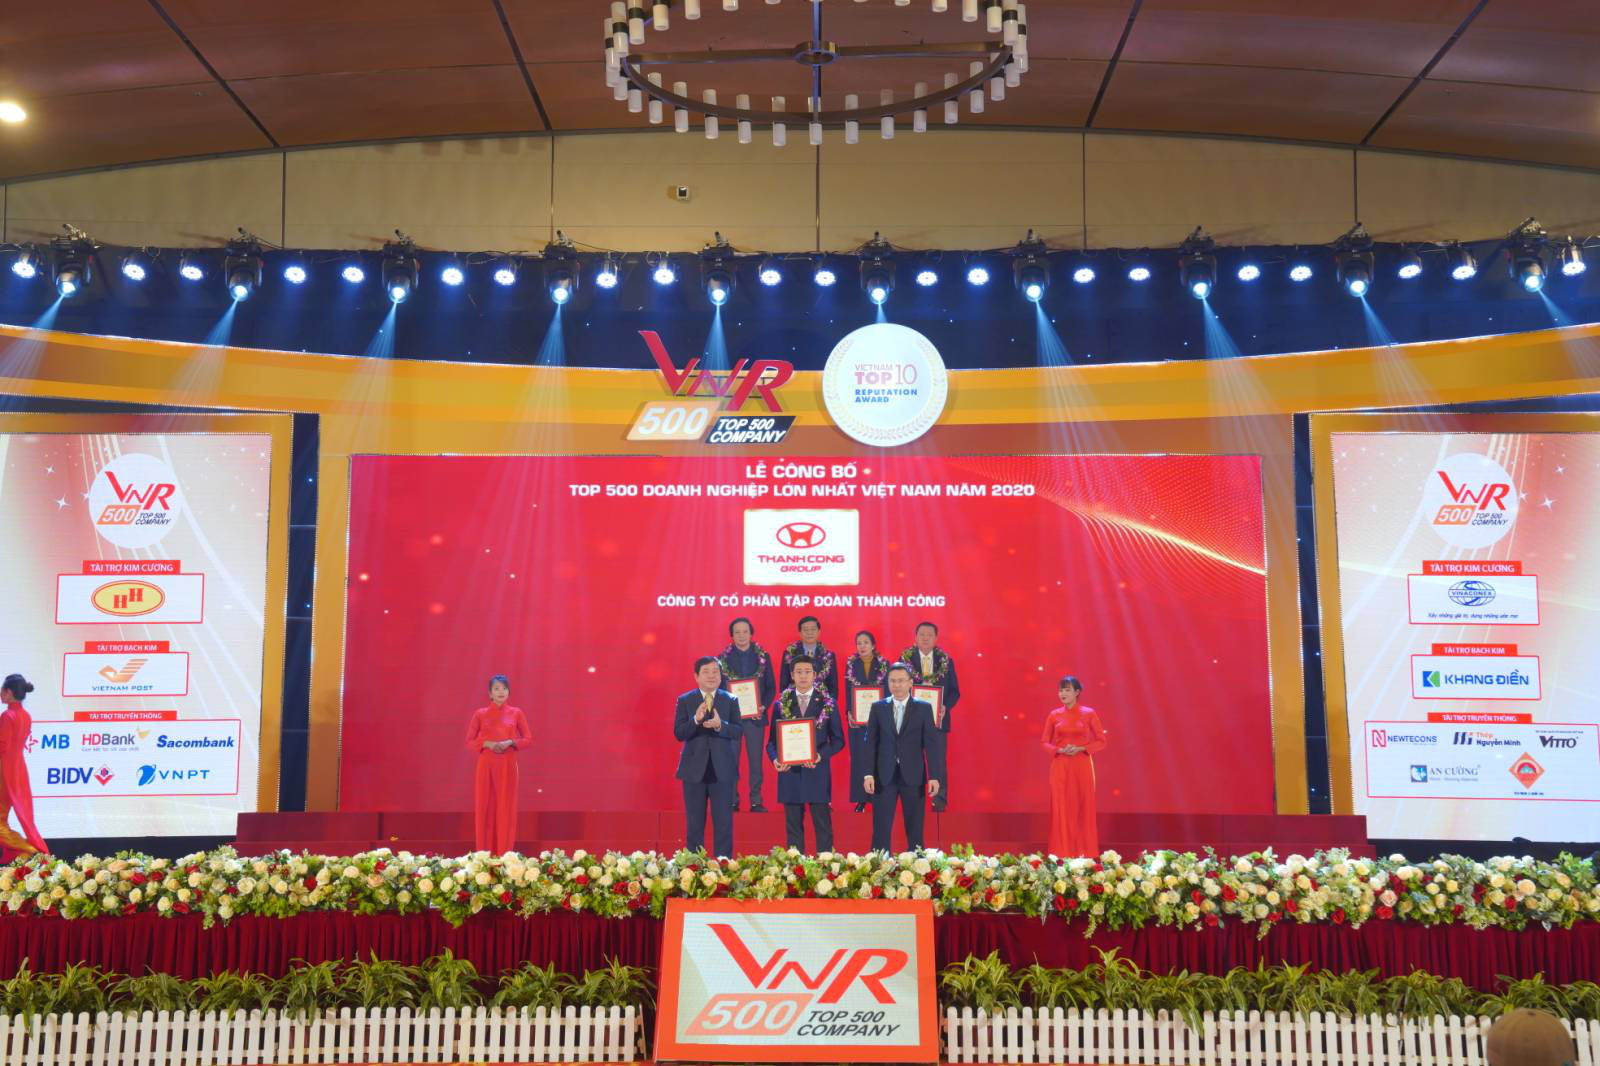 TC MOTOR xếp hạng 12 trên bảng xếp hạng top 500 doanh nghiệp tư nhân lớn nhất Việt Nam - Ảnh 1.